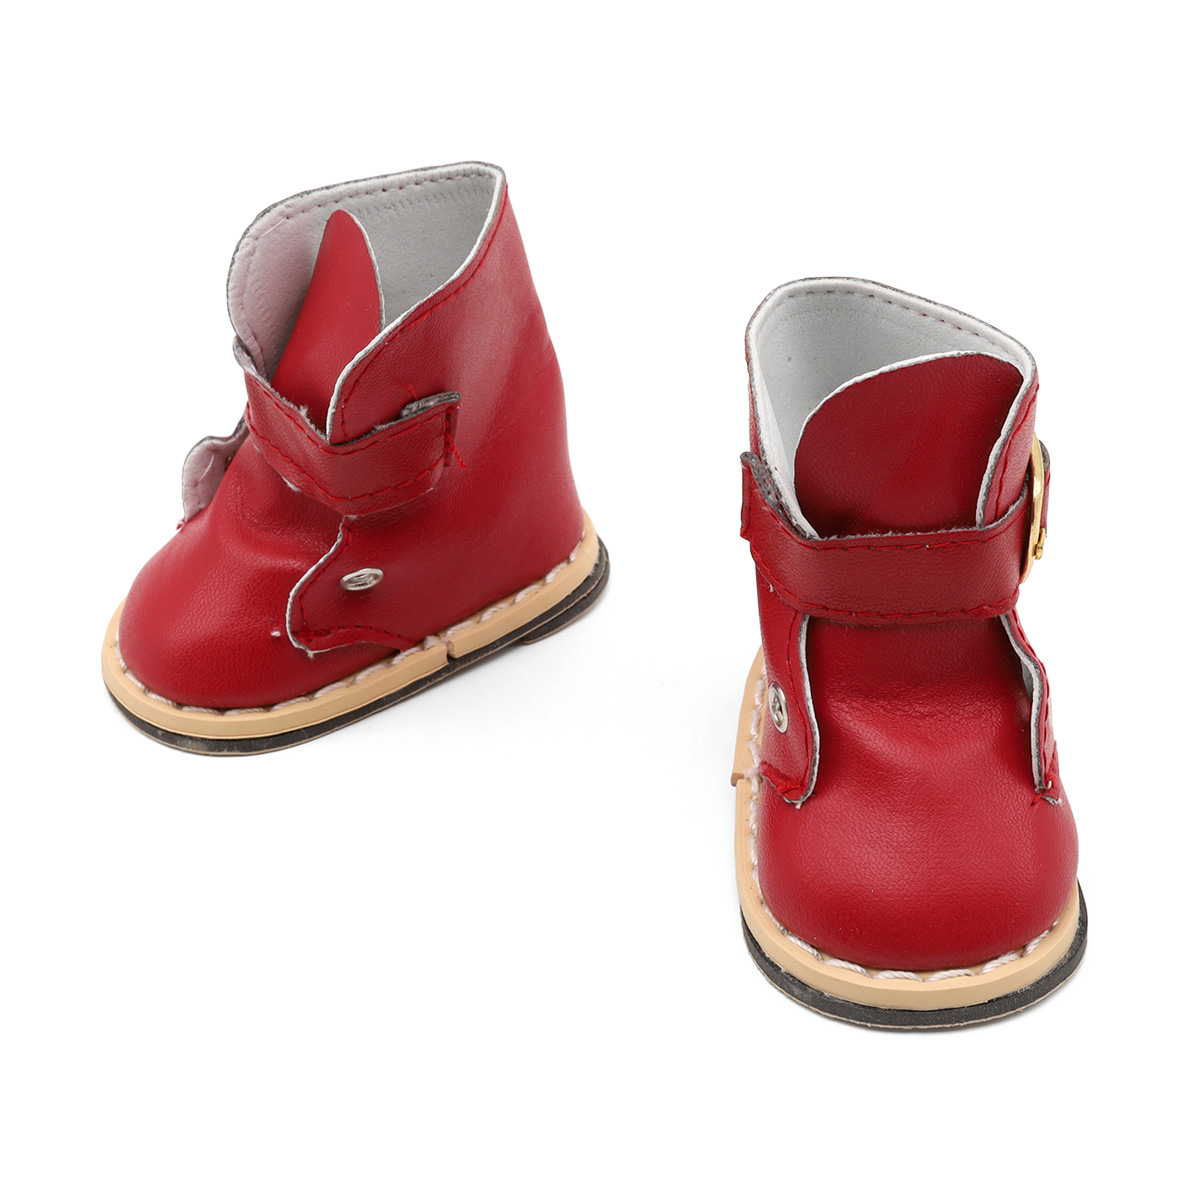 SH-0024 Ботиночки для кукол 7,5*4,2*6,0 см, 1 пара, Astra&Craft (красный)